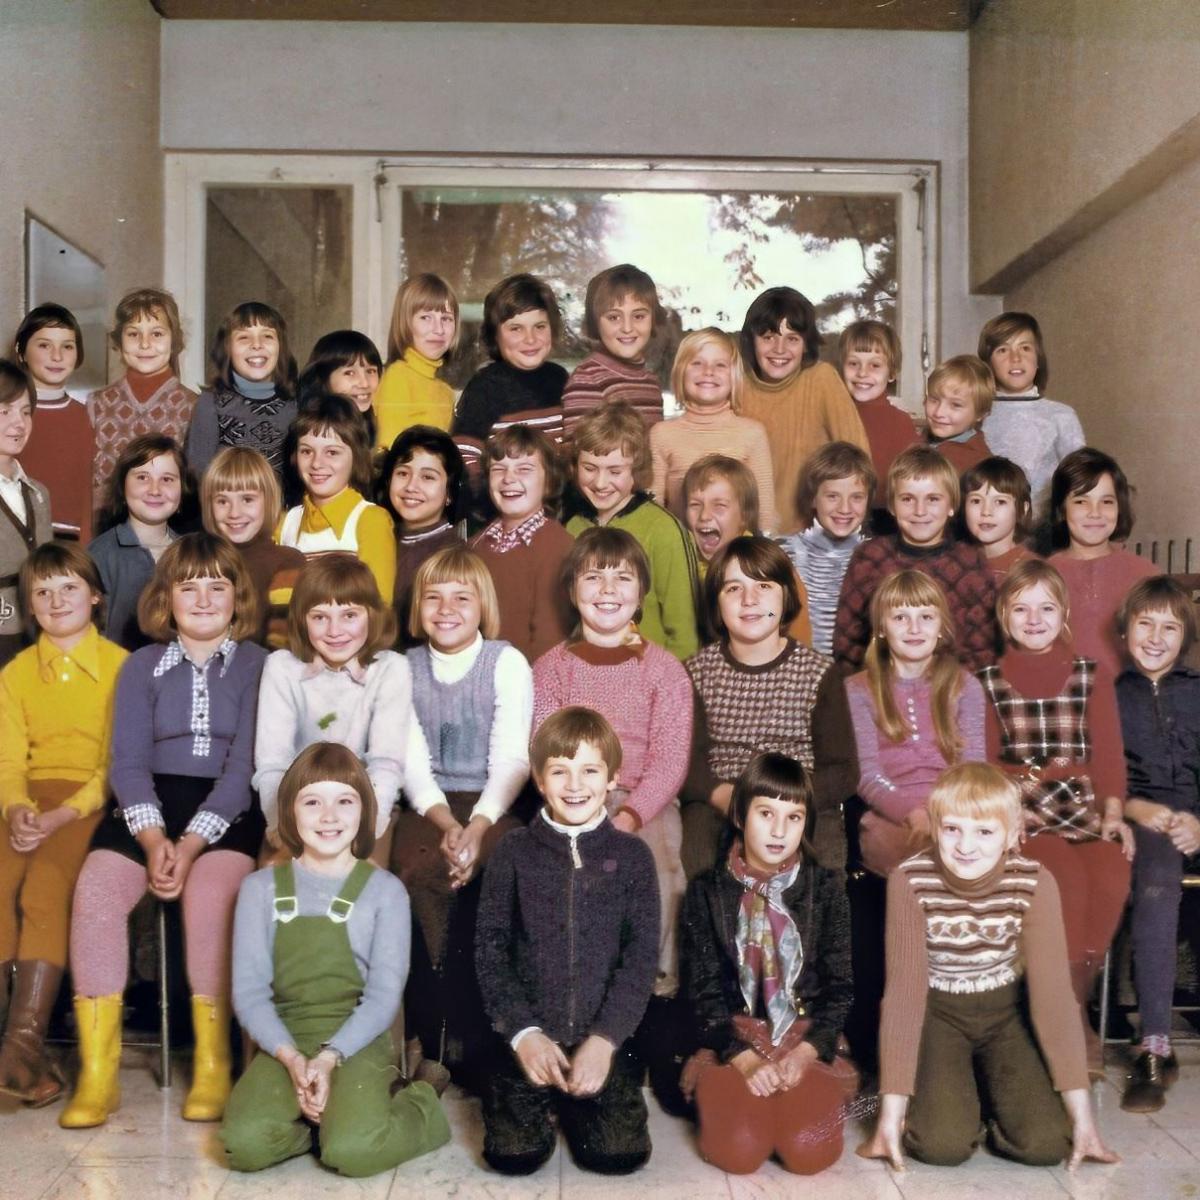 1975: Schuljahr 1974/75 - Bild der 4ten Klasse (Quelle: Stephan Lenk)